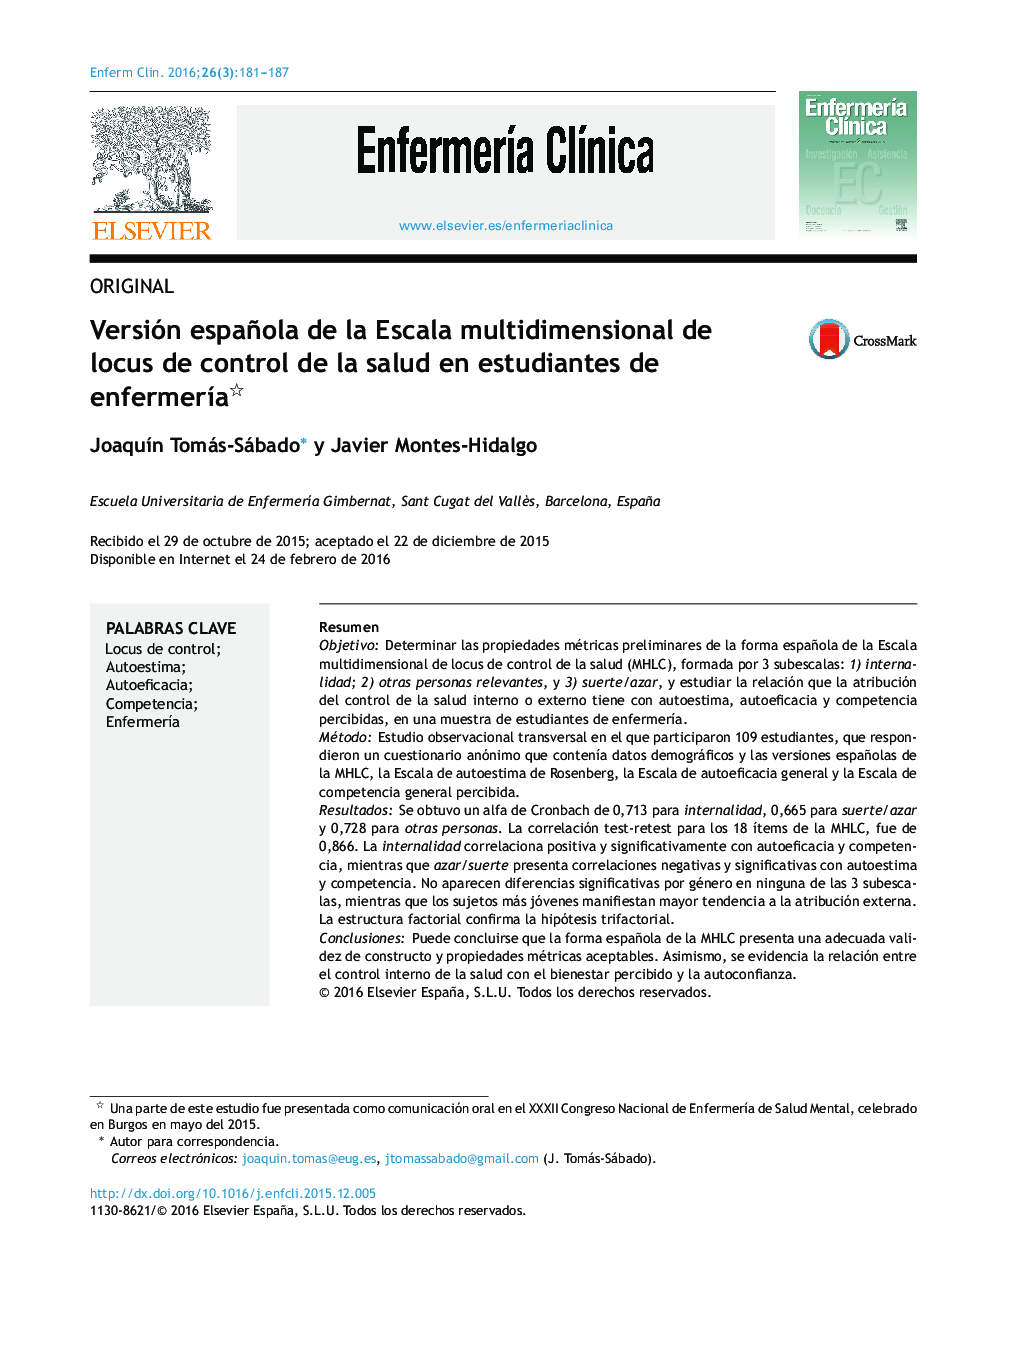 نسخه اسپانیایی + - مقیاس چند بعدی از جنبه کنترل بهداشت و درمان در دانشجویان پرستاری؟ 